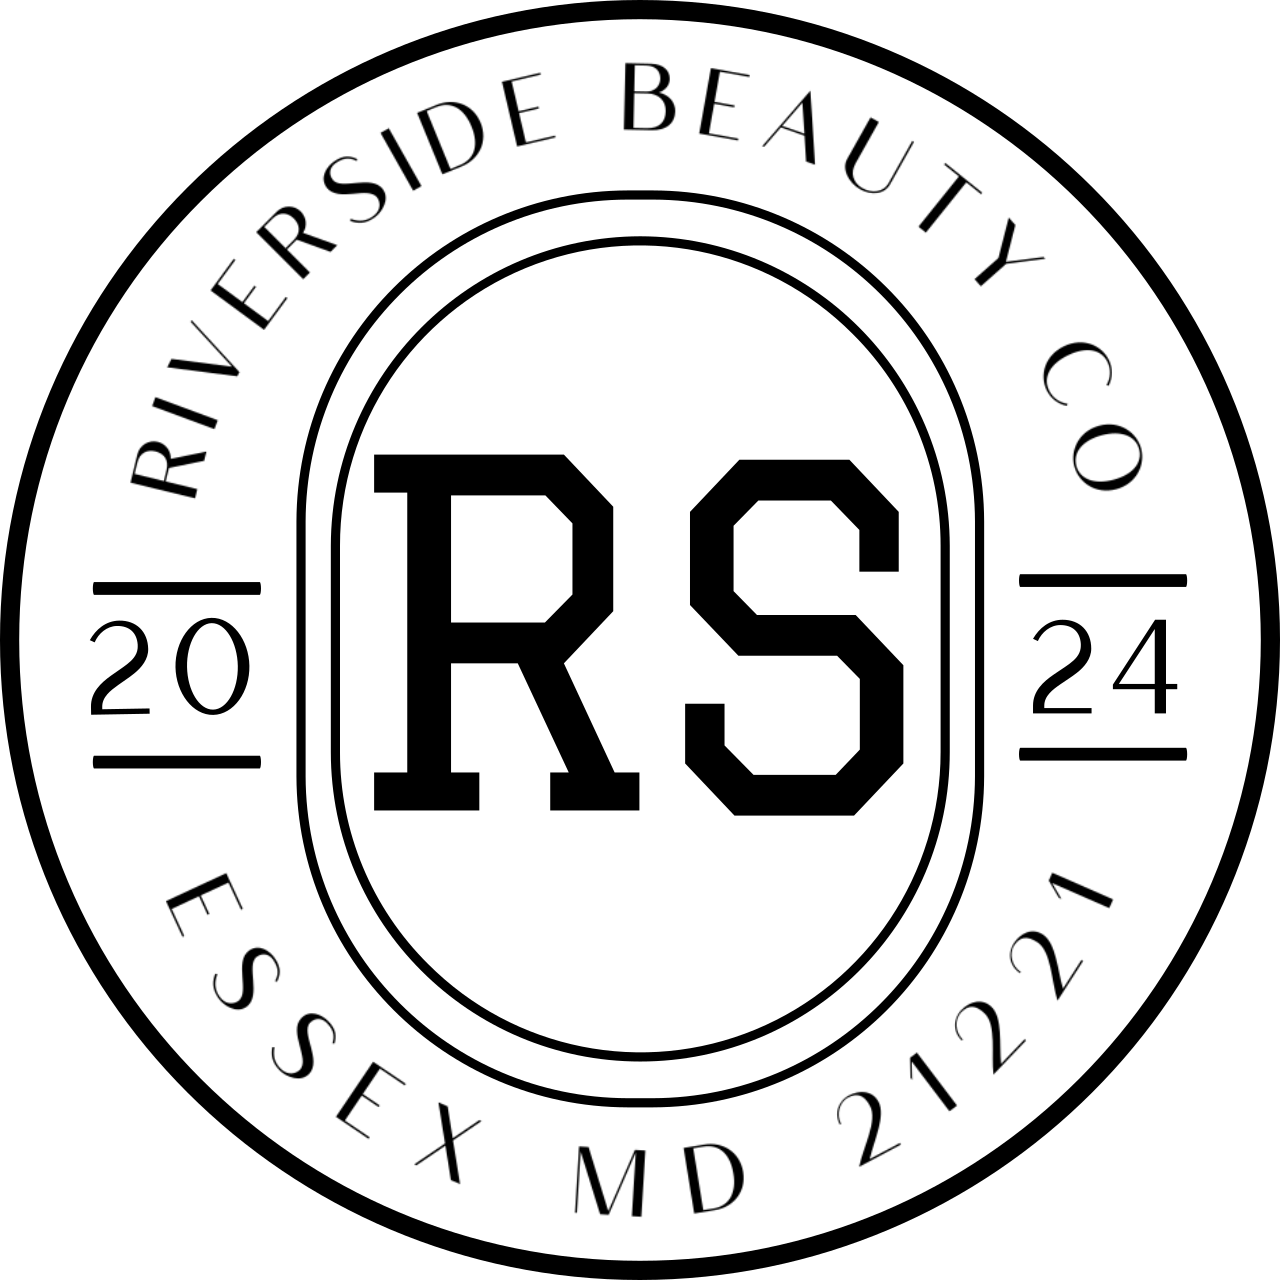 RIVERSIDE BEAUTY CO's logo